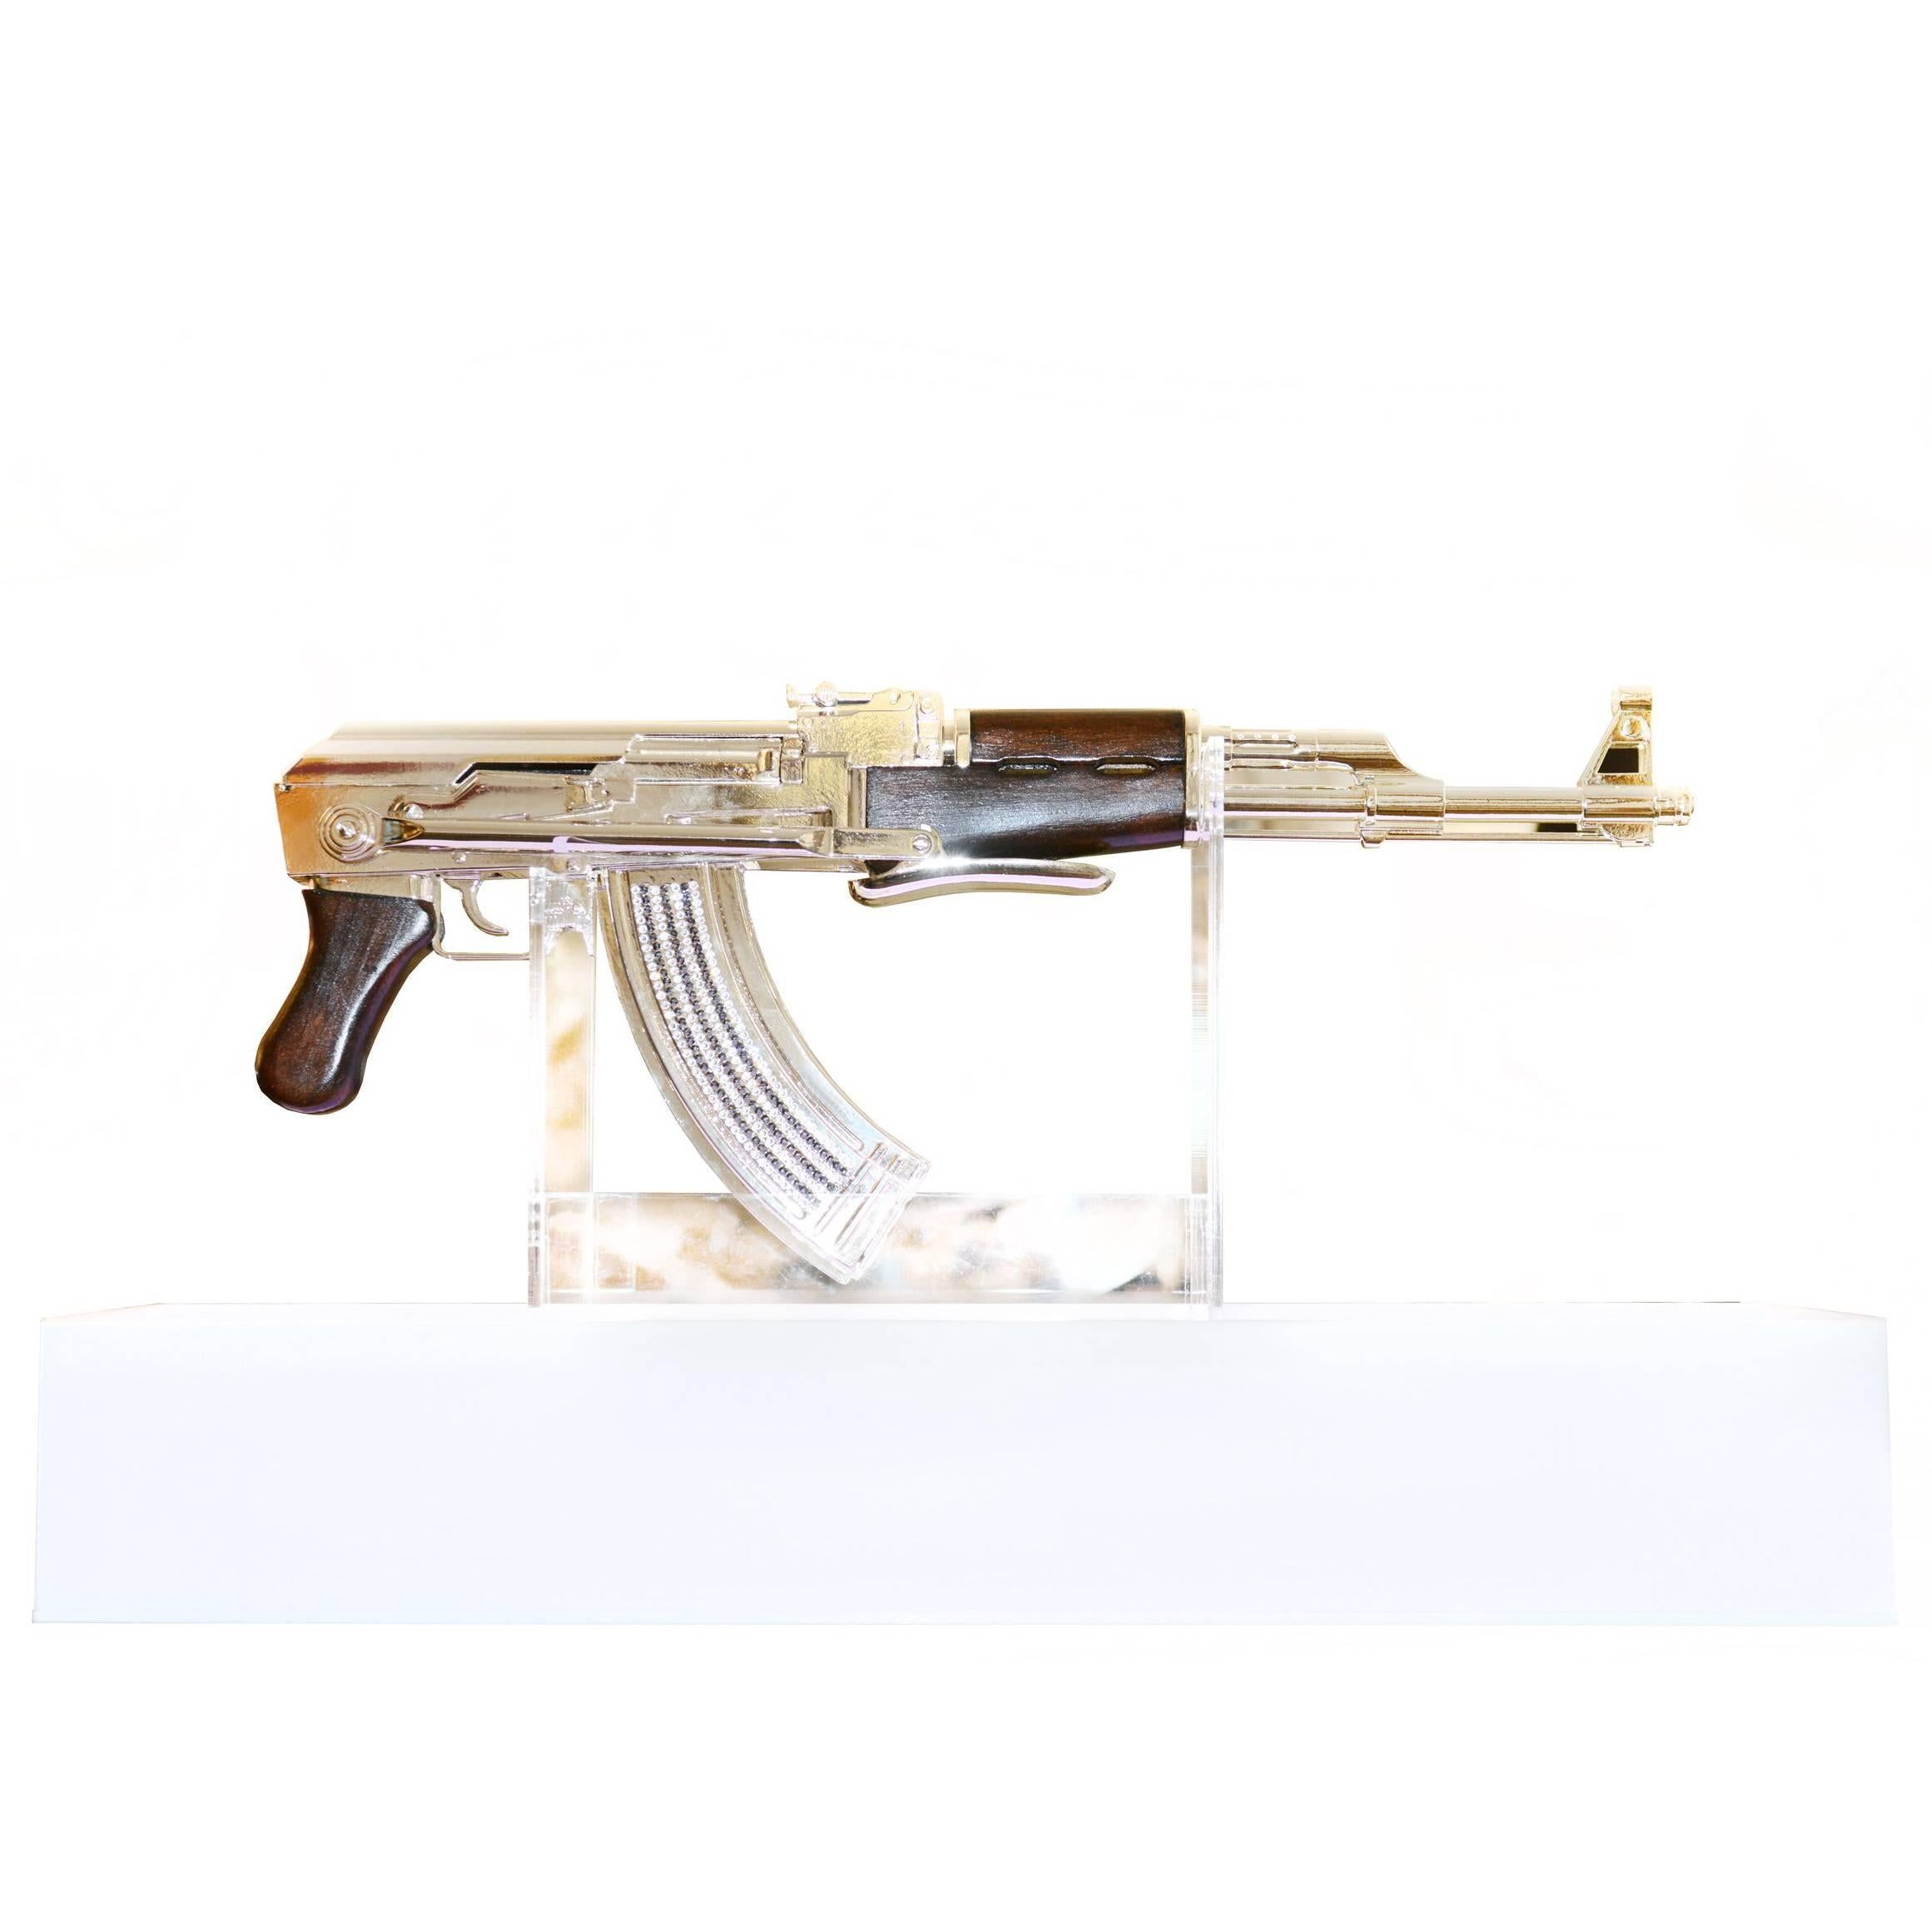 AK-47 in Silver Finish Art Sculpture Demilitarized